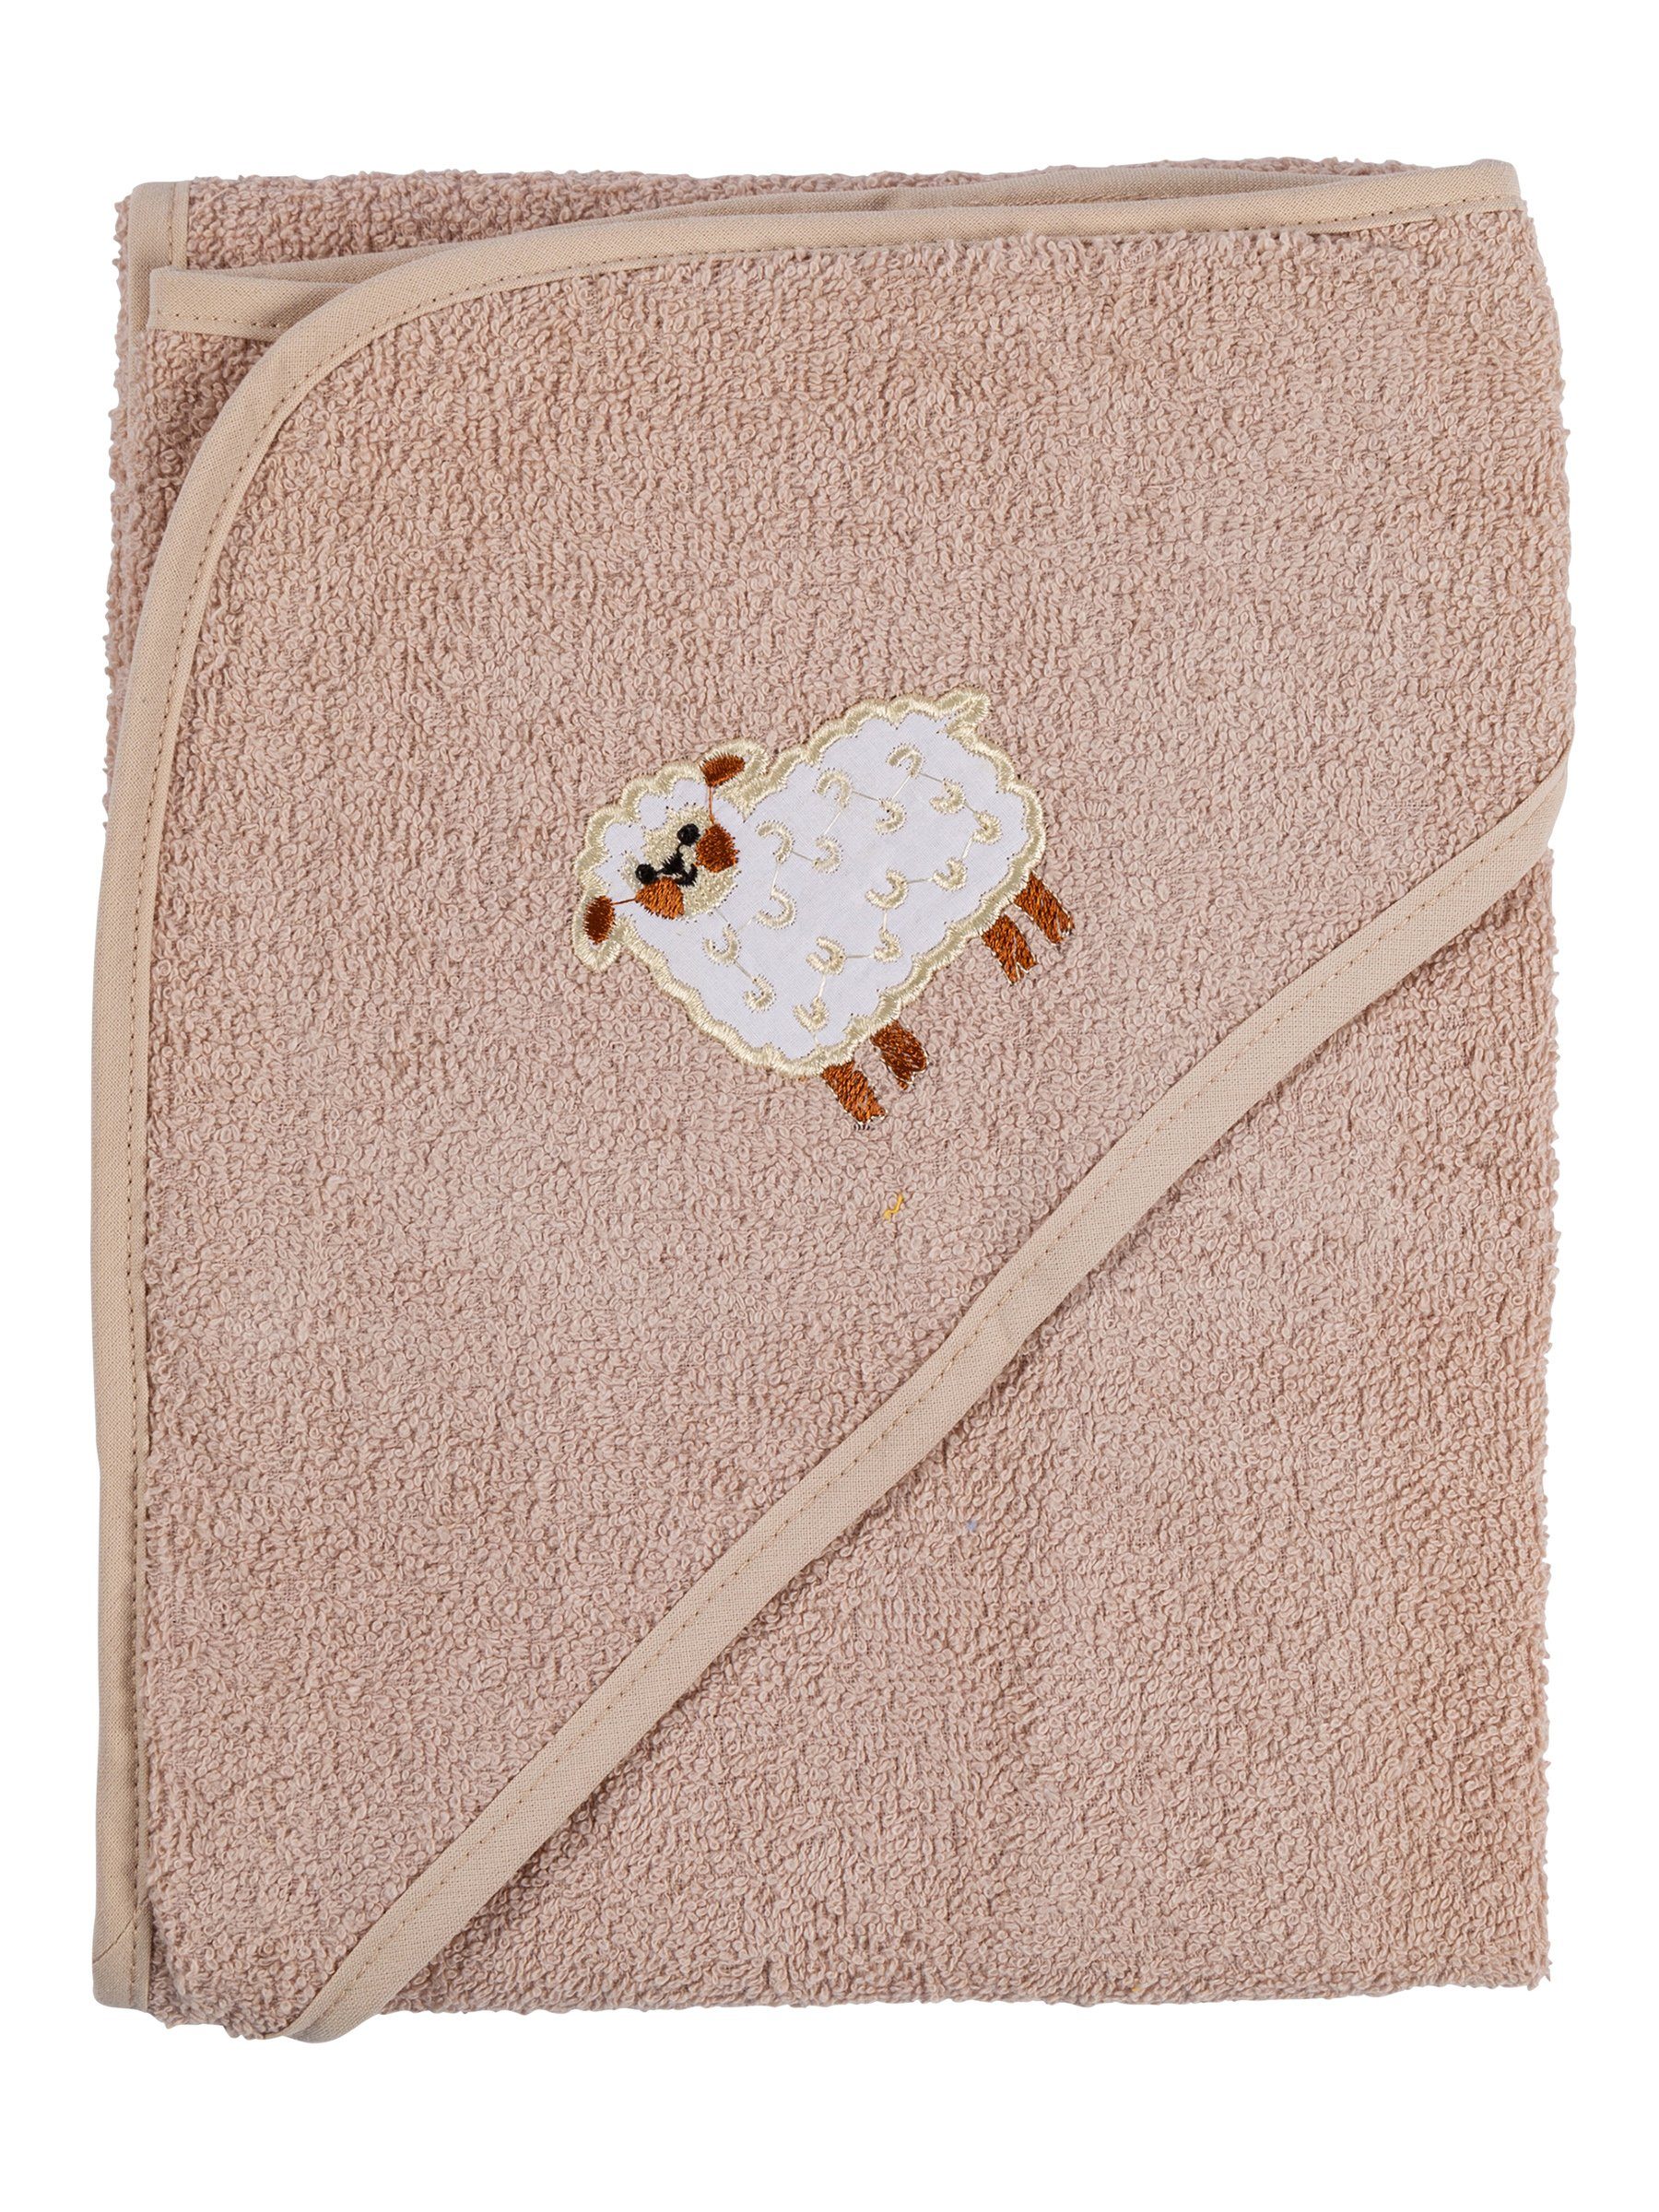 Clinotest Kapuzenhandtuch Kuscheliges Handtuch für Babys, 80x80 cm,  verschiedene Farben